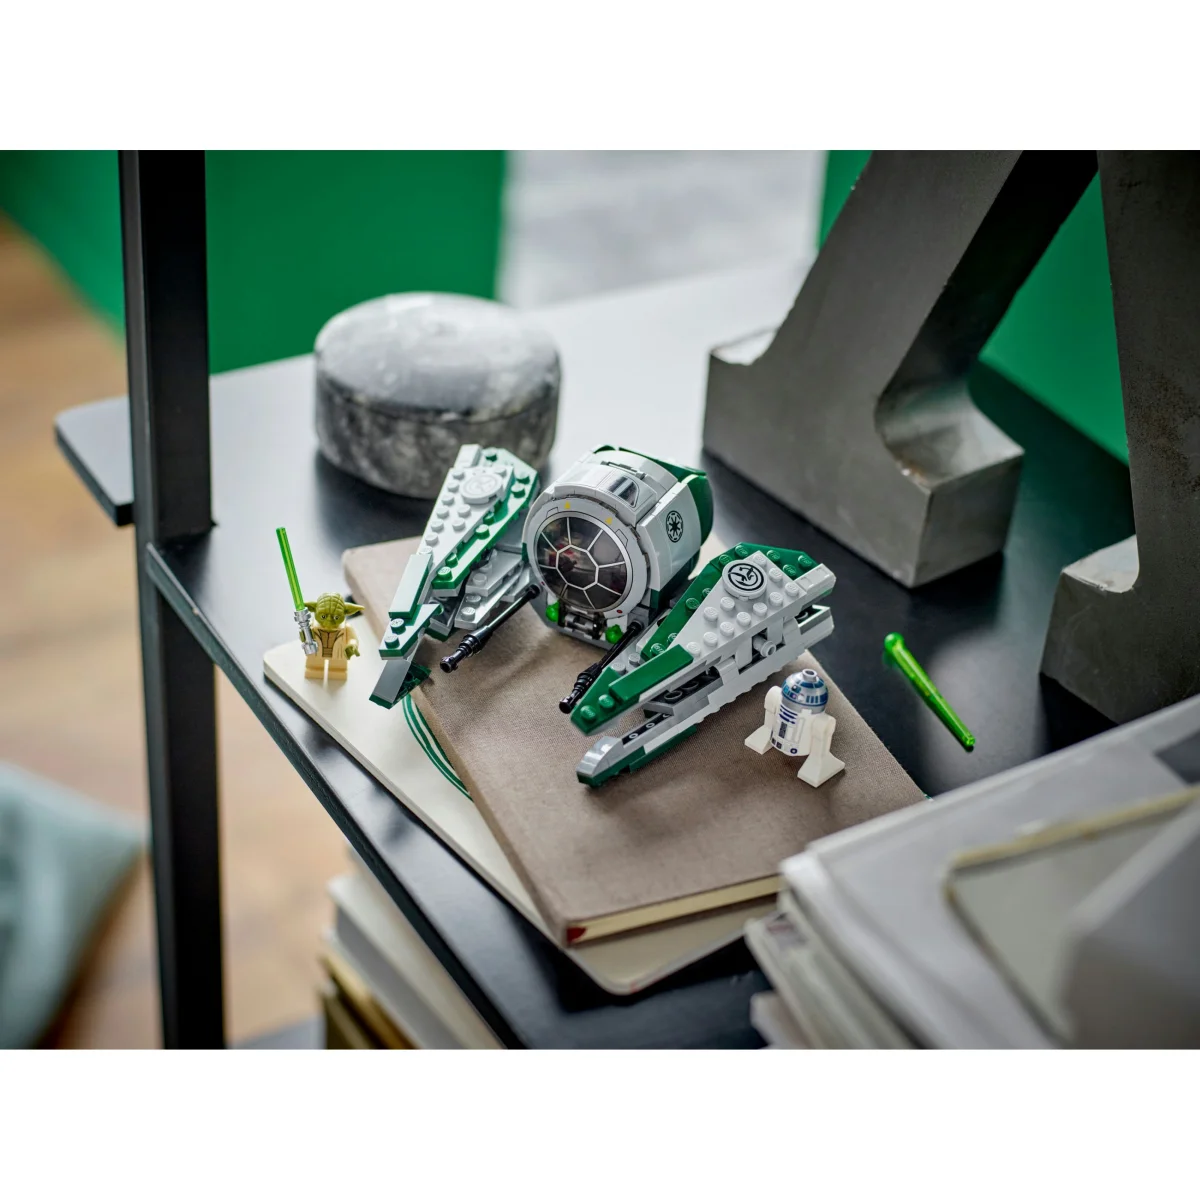 LEGO® Star Wars Yodas Jedi Starfighter 75360